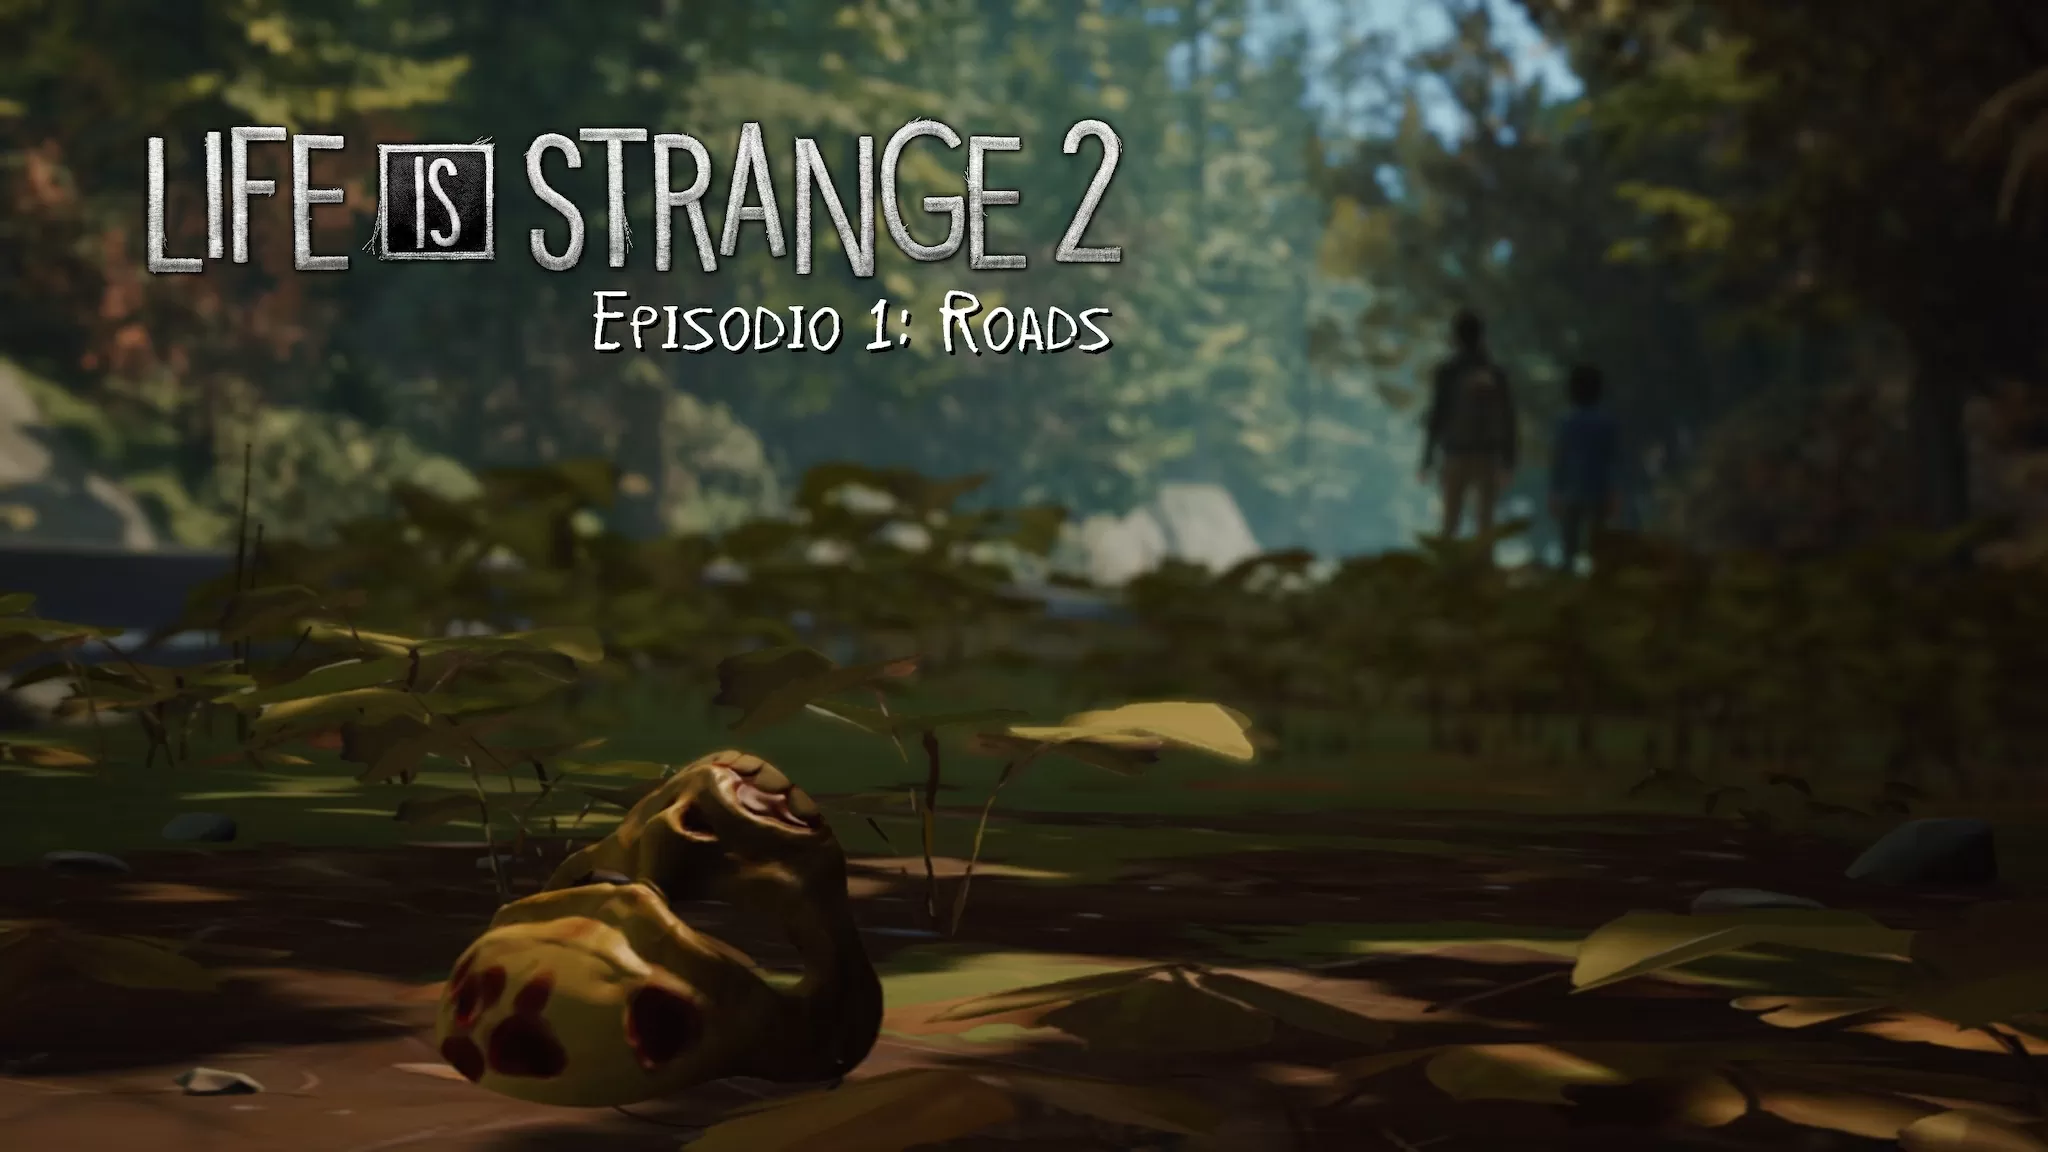 Life is Strange 2, la recensione del primo episodio: “Roads”